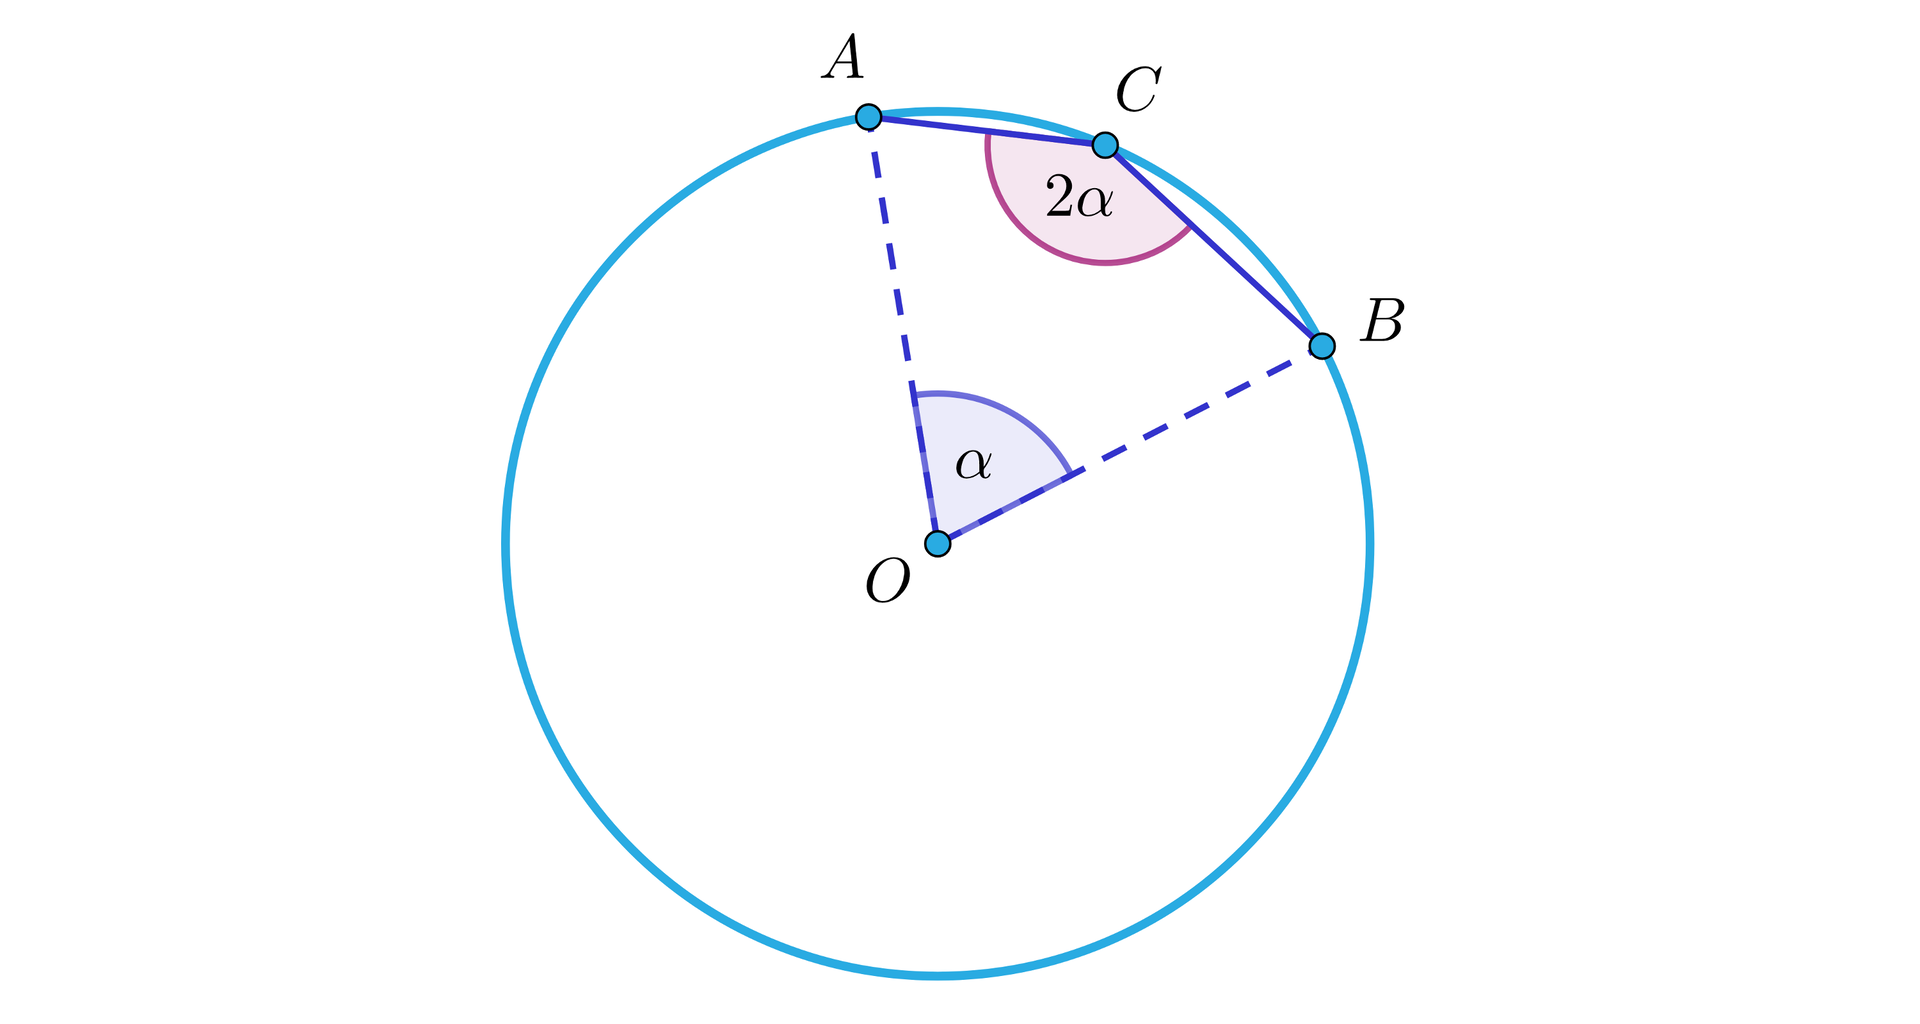 Grafika przedstawia okrąg. Środek okręgu jest podpisany literą O. Punkty: A, B, C leżą na okręgu, w taki sposób, ze punkt C znajduje się pomiędzy punktem A i punktem B. Odcinki AO i BO są narysowane linią przerywaną. Kąt pomiędzy odcinkiem AO a odcinkiem BO ma wartość jest podpisany literą alfa. Kąt pomiędzy odcinkiem 